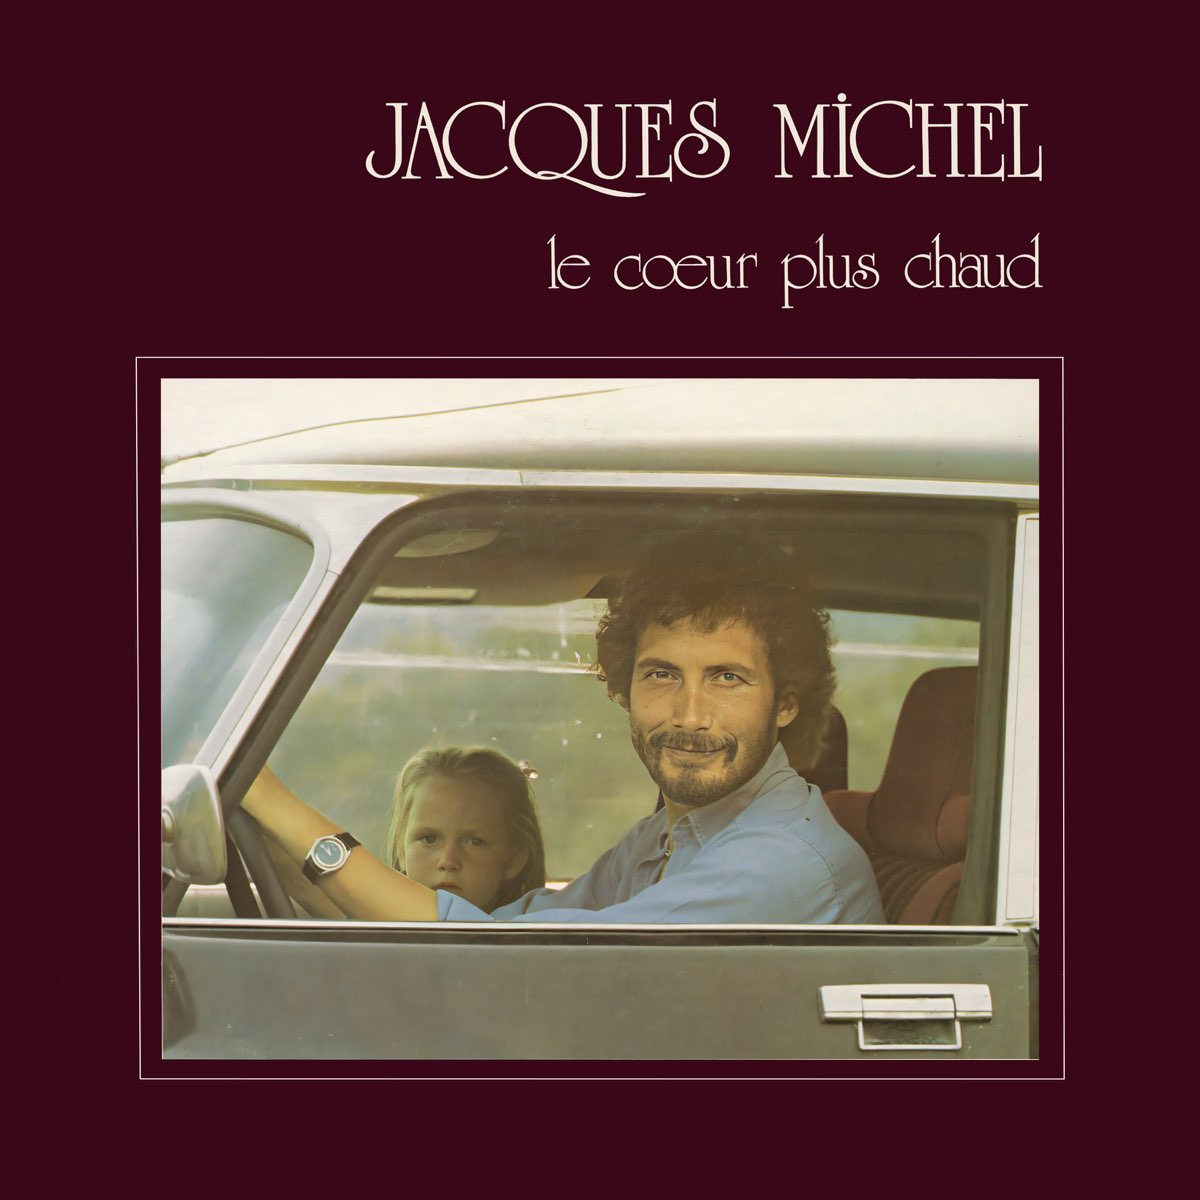 JACQUES MICHEL : Les albums Le cœur plus chaud et Maudit que j’m’aime accessibles en version numérique